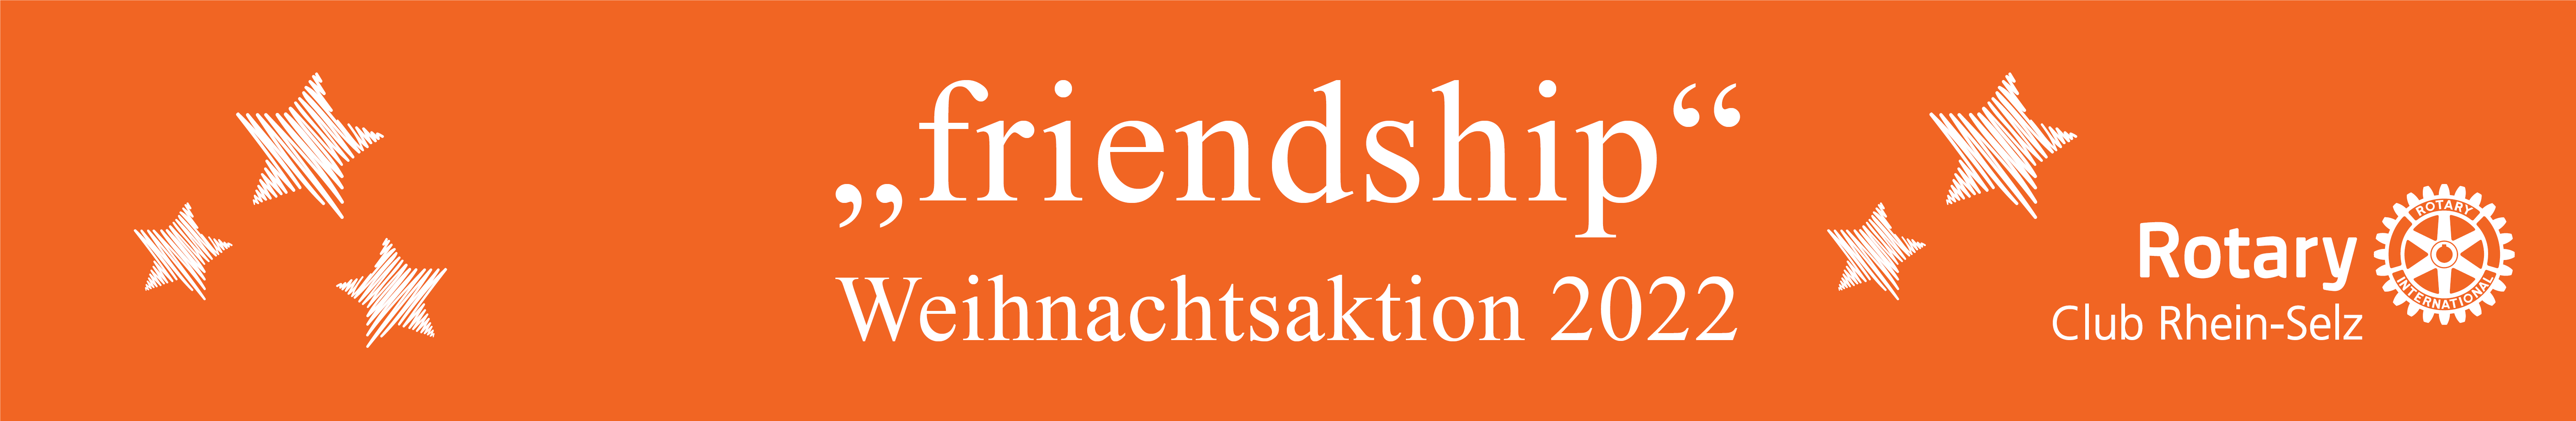 <b>„friendship“ – Weihnachtsaktion 2022</b>